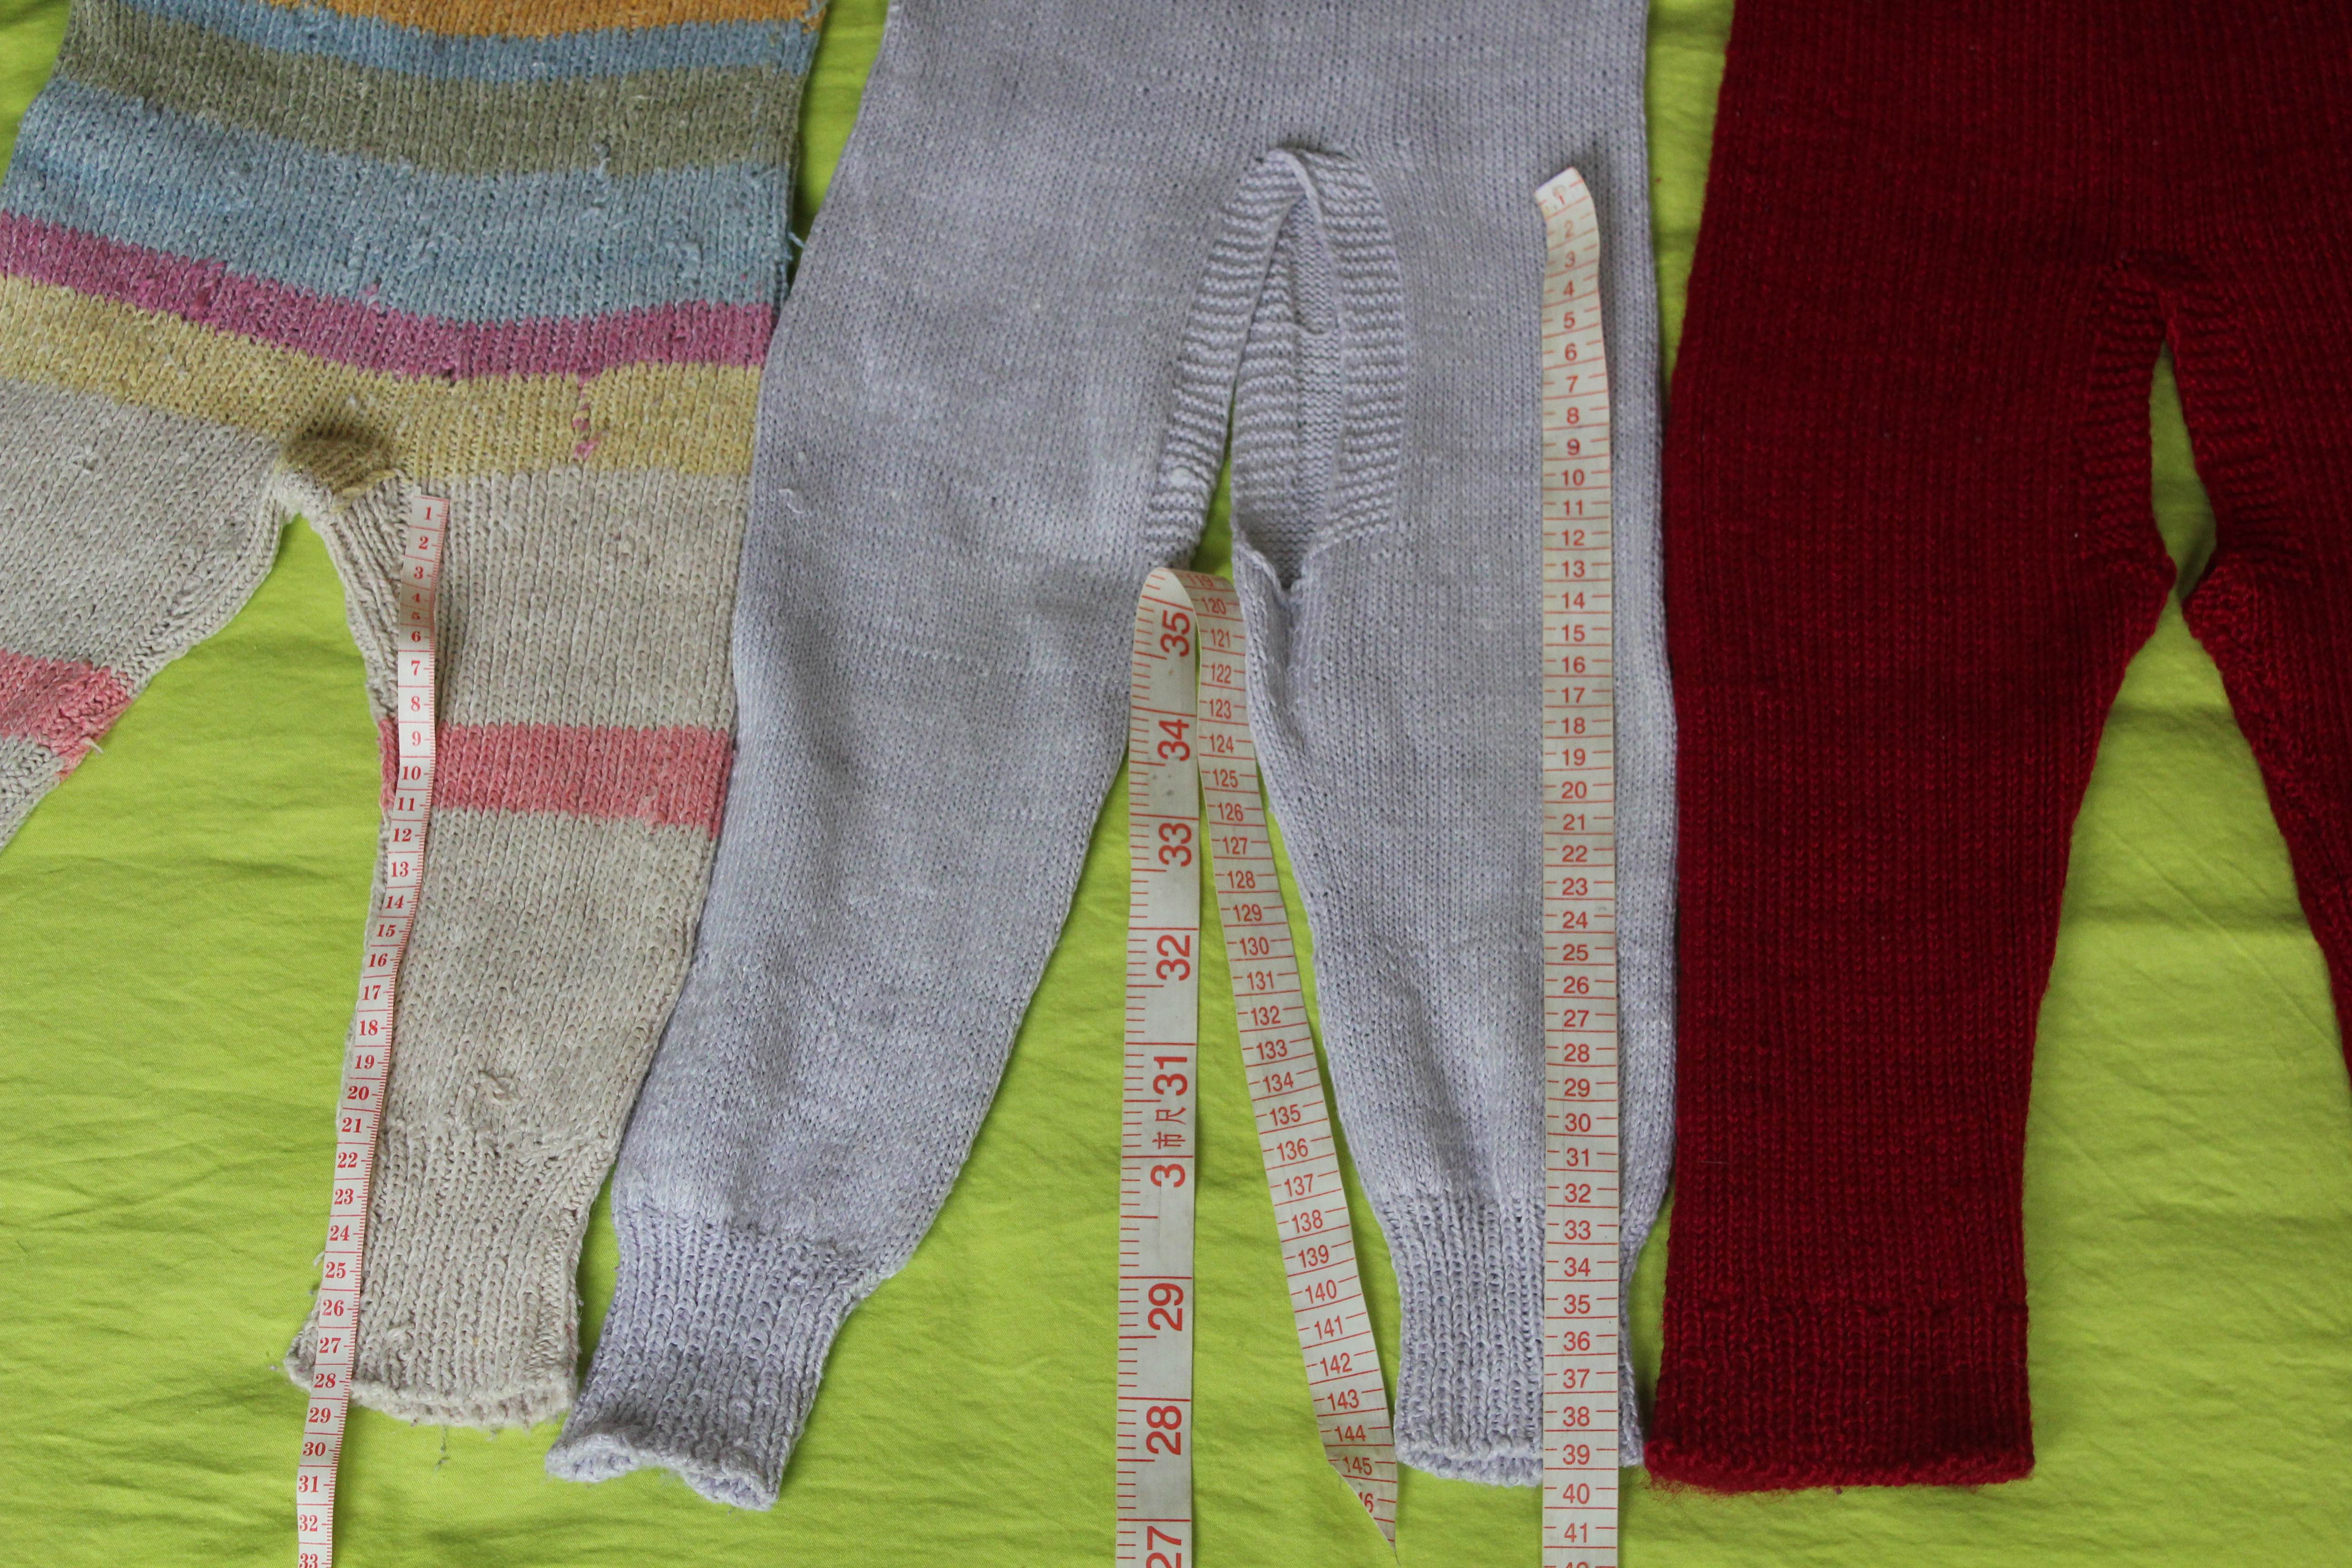 老人织的毛裤,腰比较高,能护住肚子,红色是厚的,另两条薄些,15元一条.